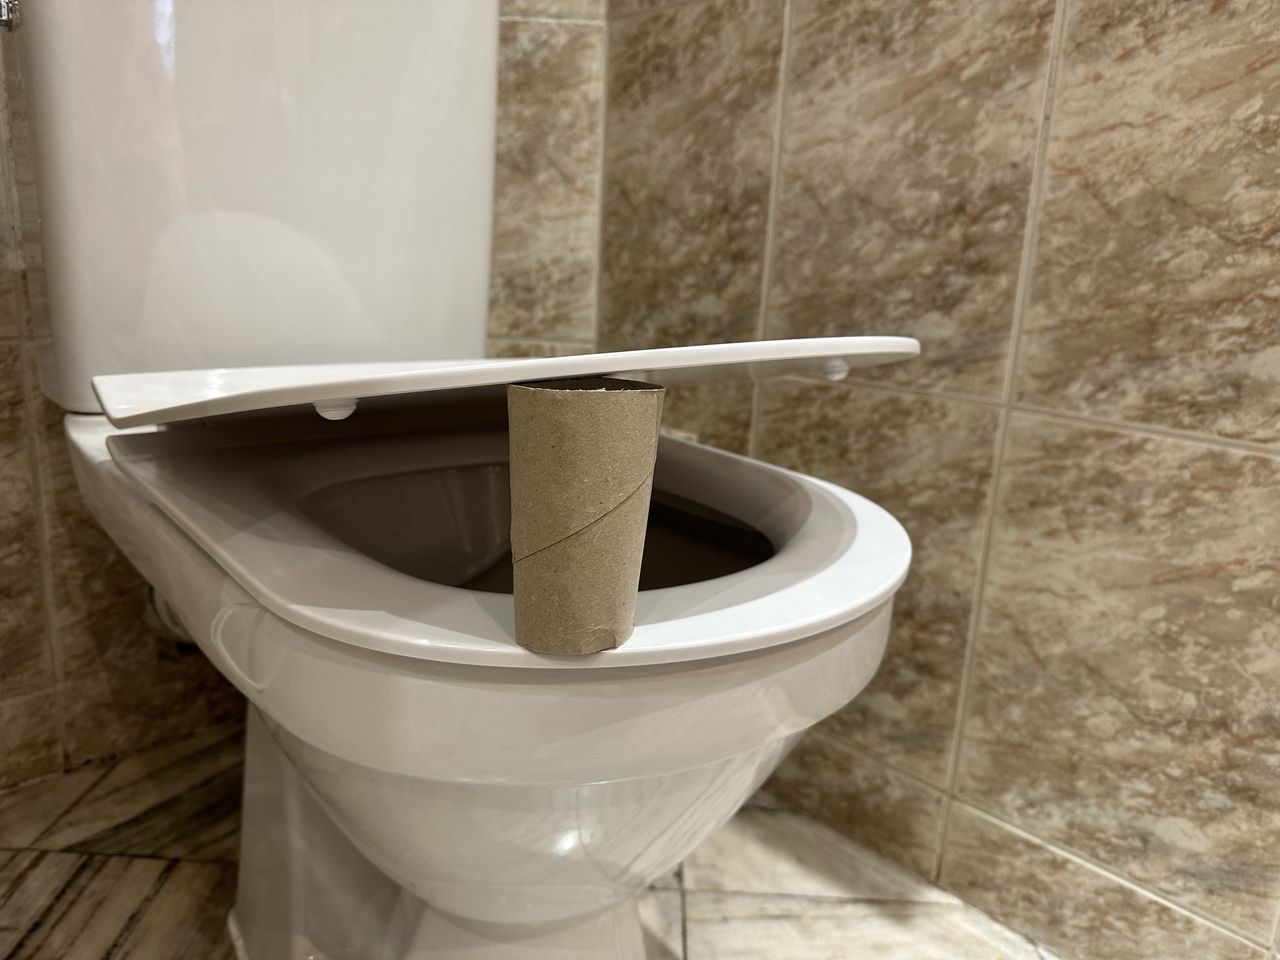 Co oznacza rolka po papierze toaletowym umieszczona pod deską? 